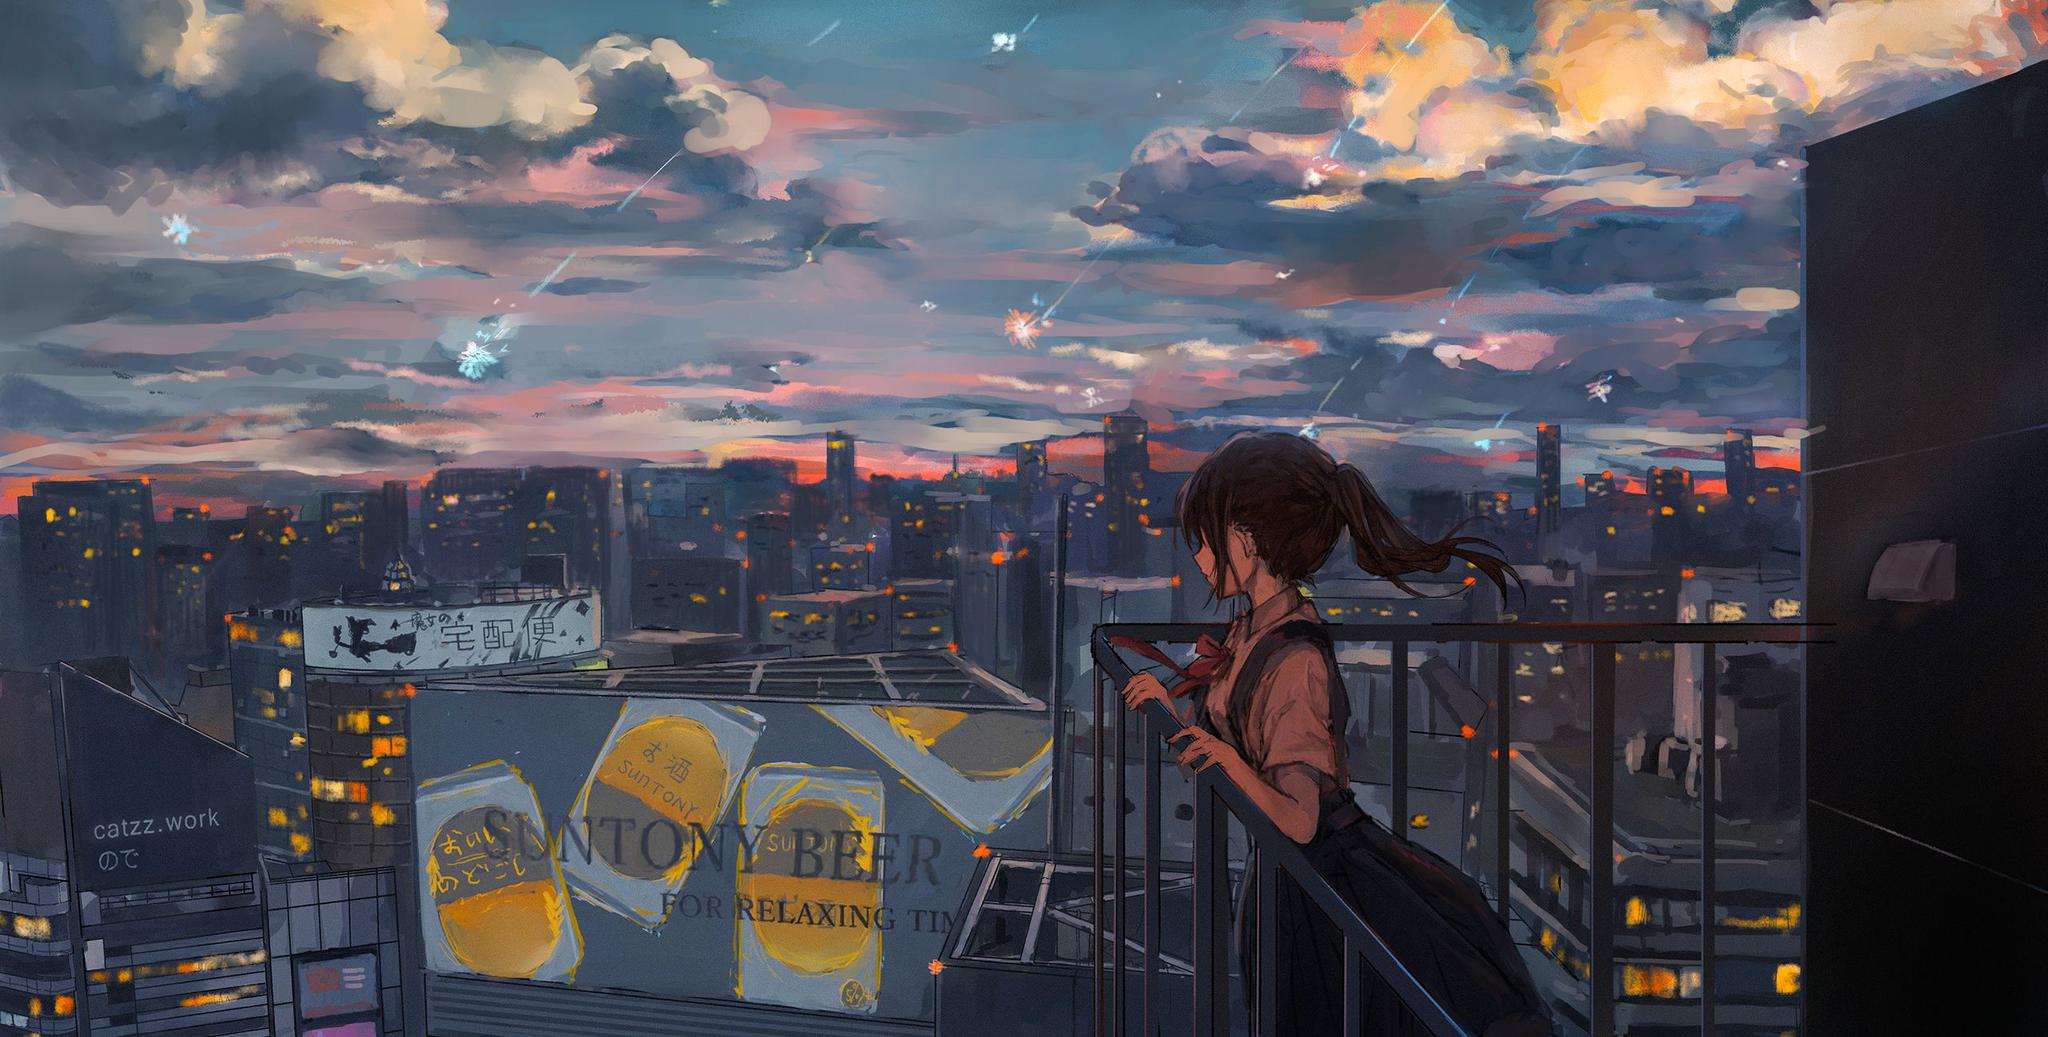 动漫美图:夜晚的城市很漂亮,要是再有一场流星雨那就更好了,少女正